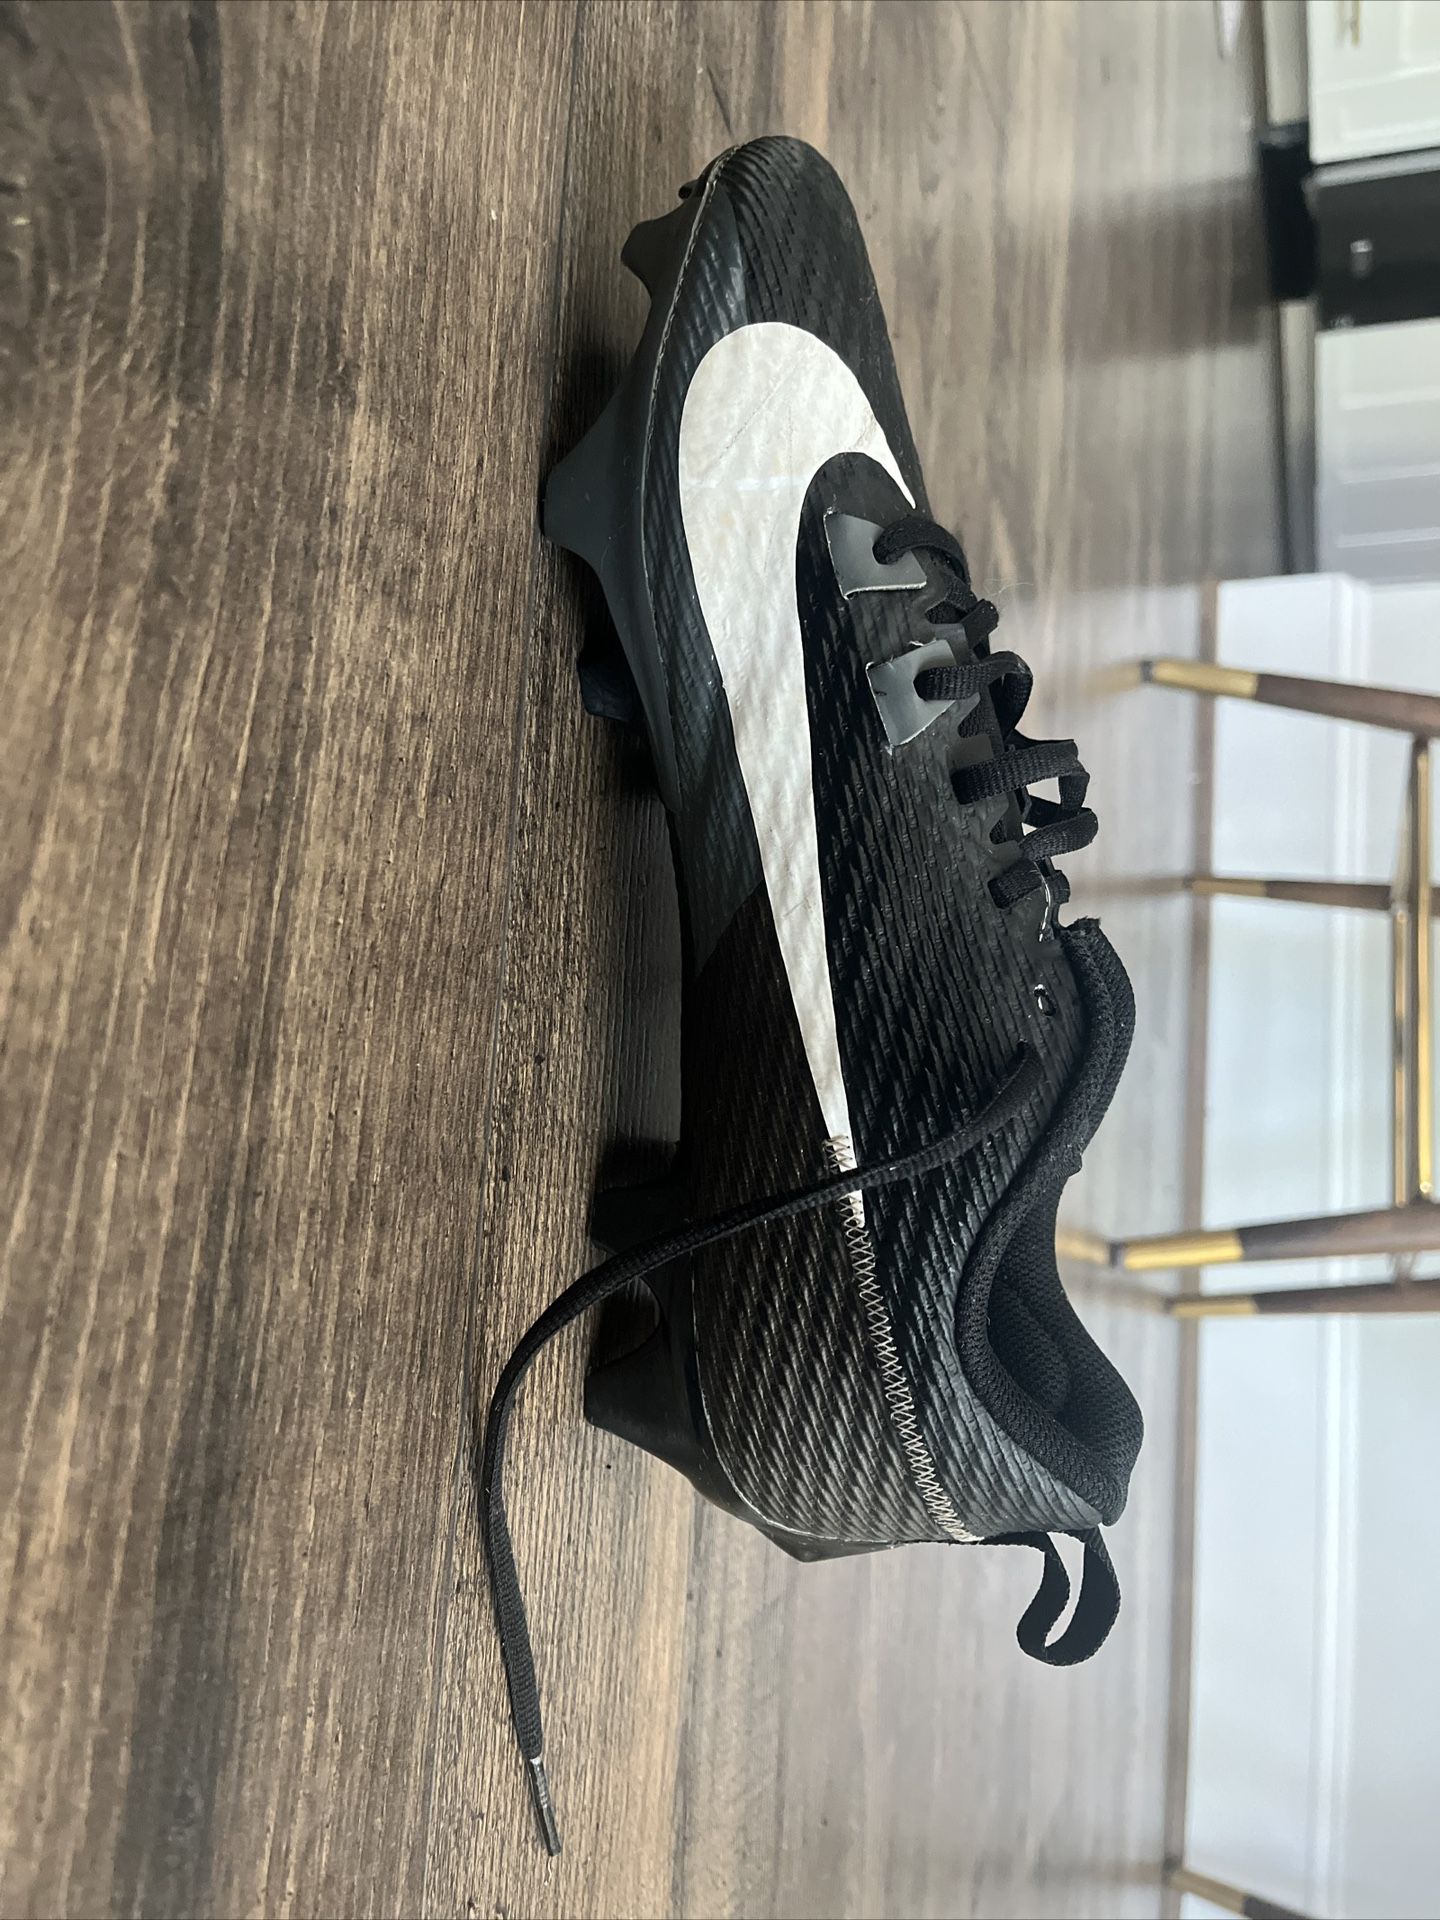 Nike Vapor Edge Cleats Size 9.5 Color Black